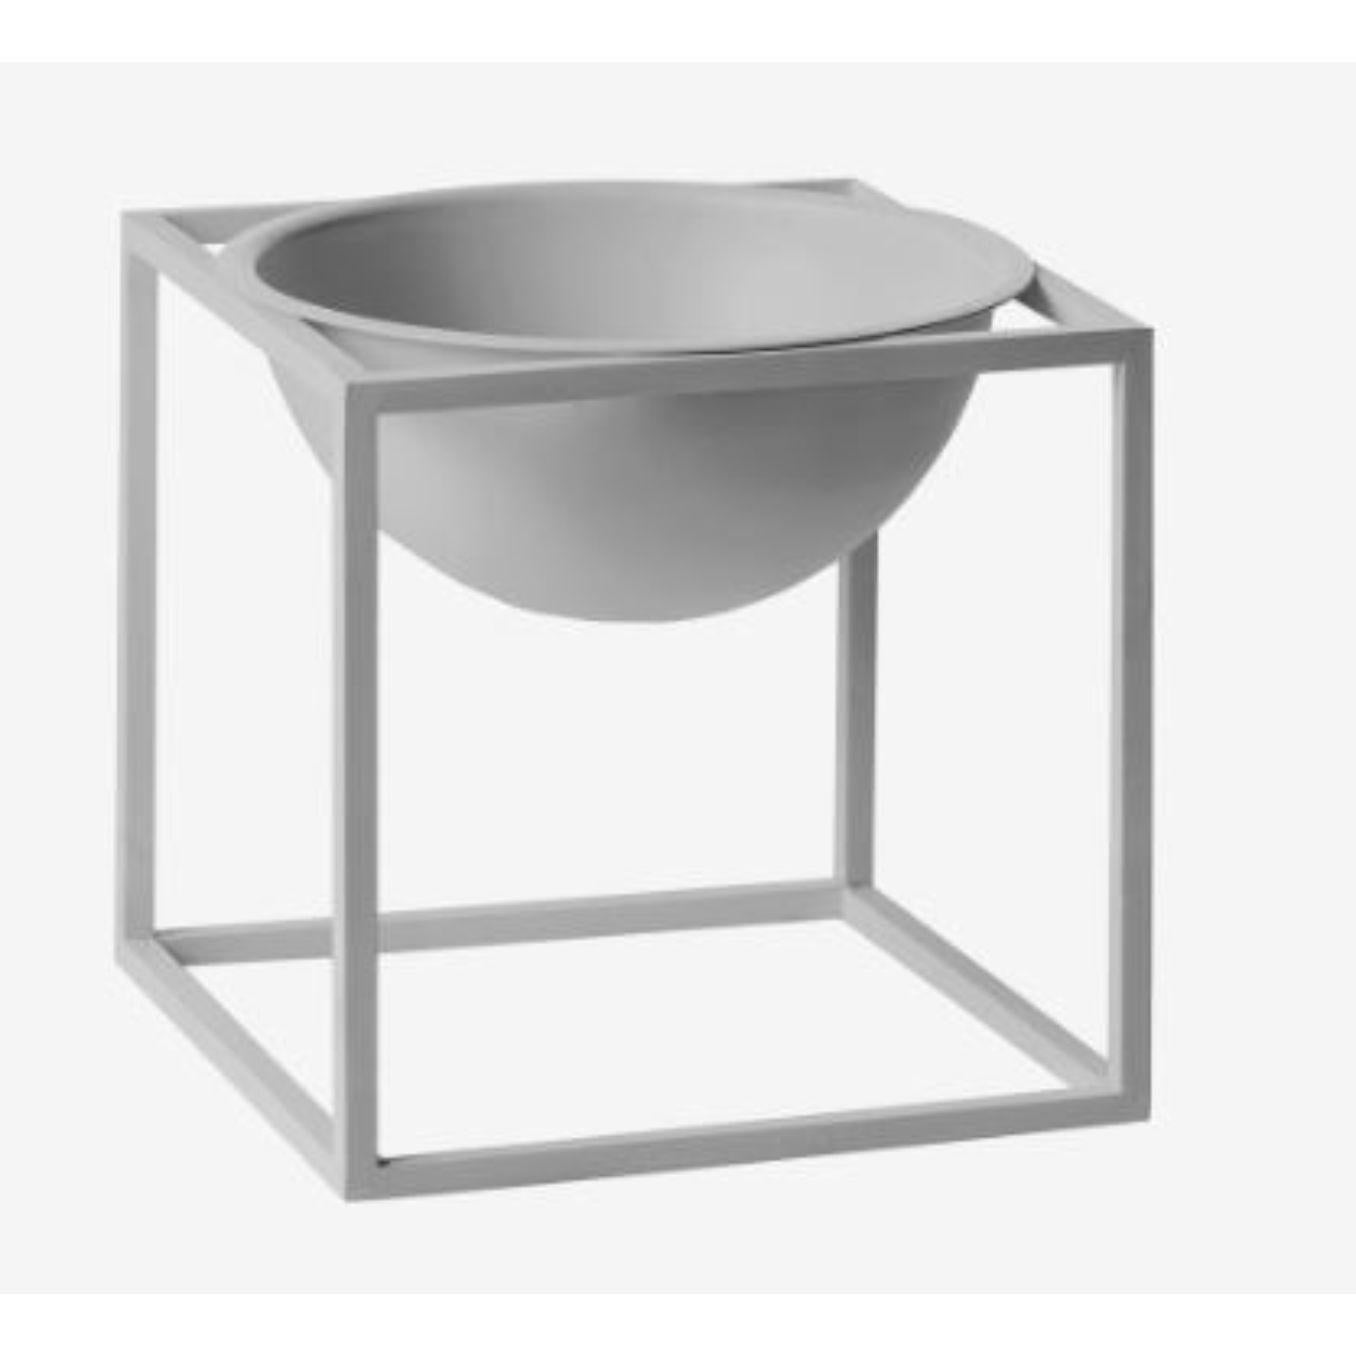 Petit bol Kubus gris froid de Lassen
Dimensions : D 14 x L 14 x H 14 cm 
Matériaux : Métal 
Poids : 1.35 kg

Le Kubus Bowl est basé sur des croquis originaux de Mogens Lassen, et contient des éléments du Bauhaus, dont Mogens Lassen s'est inspiré. Le